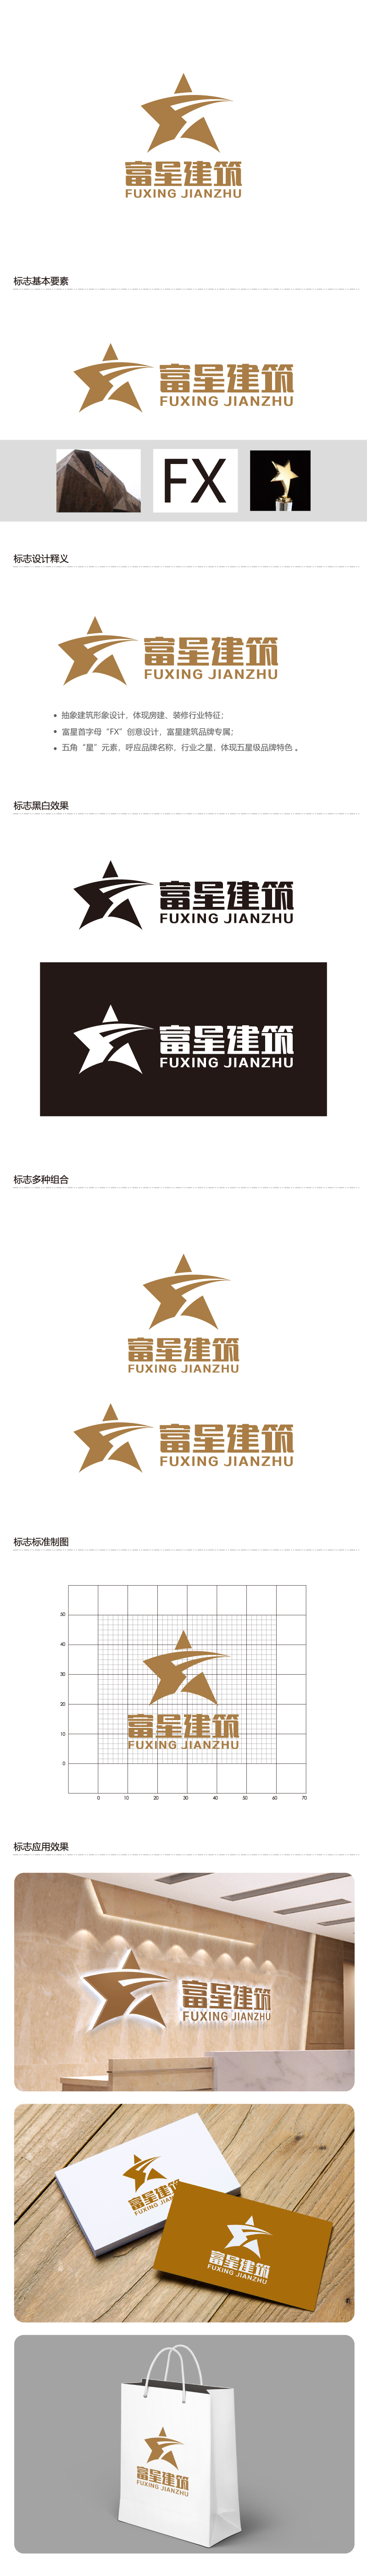 叶美宝的天津富星建筑工程有限公司logo设计